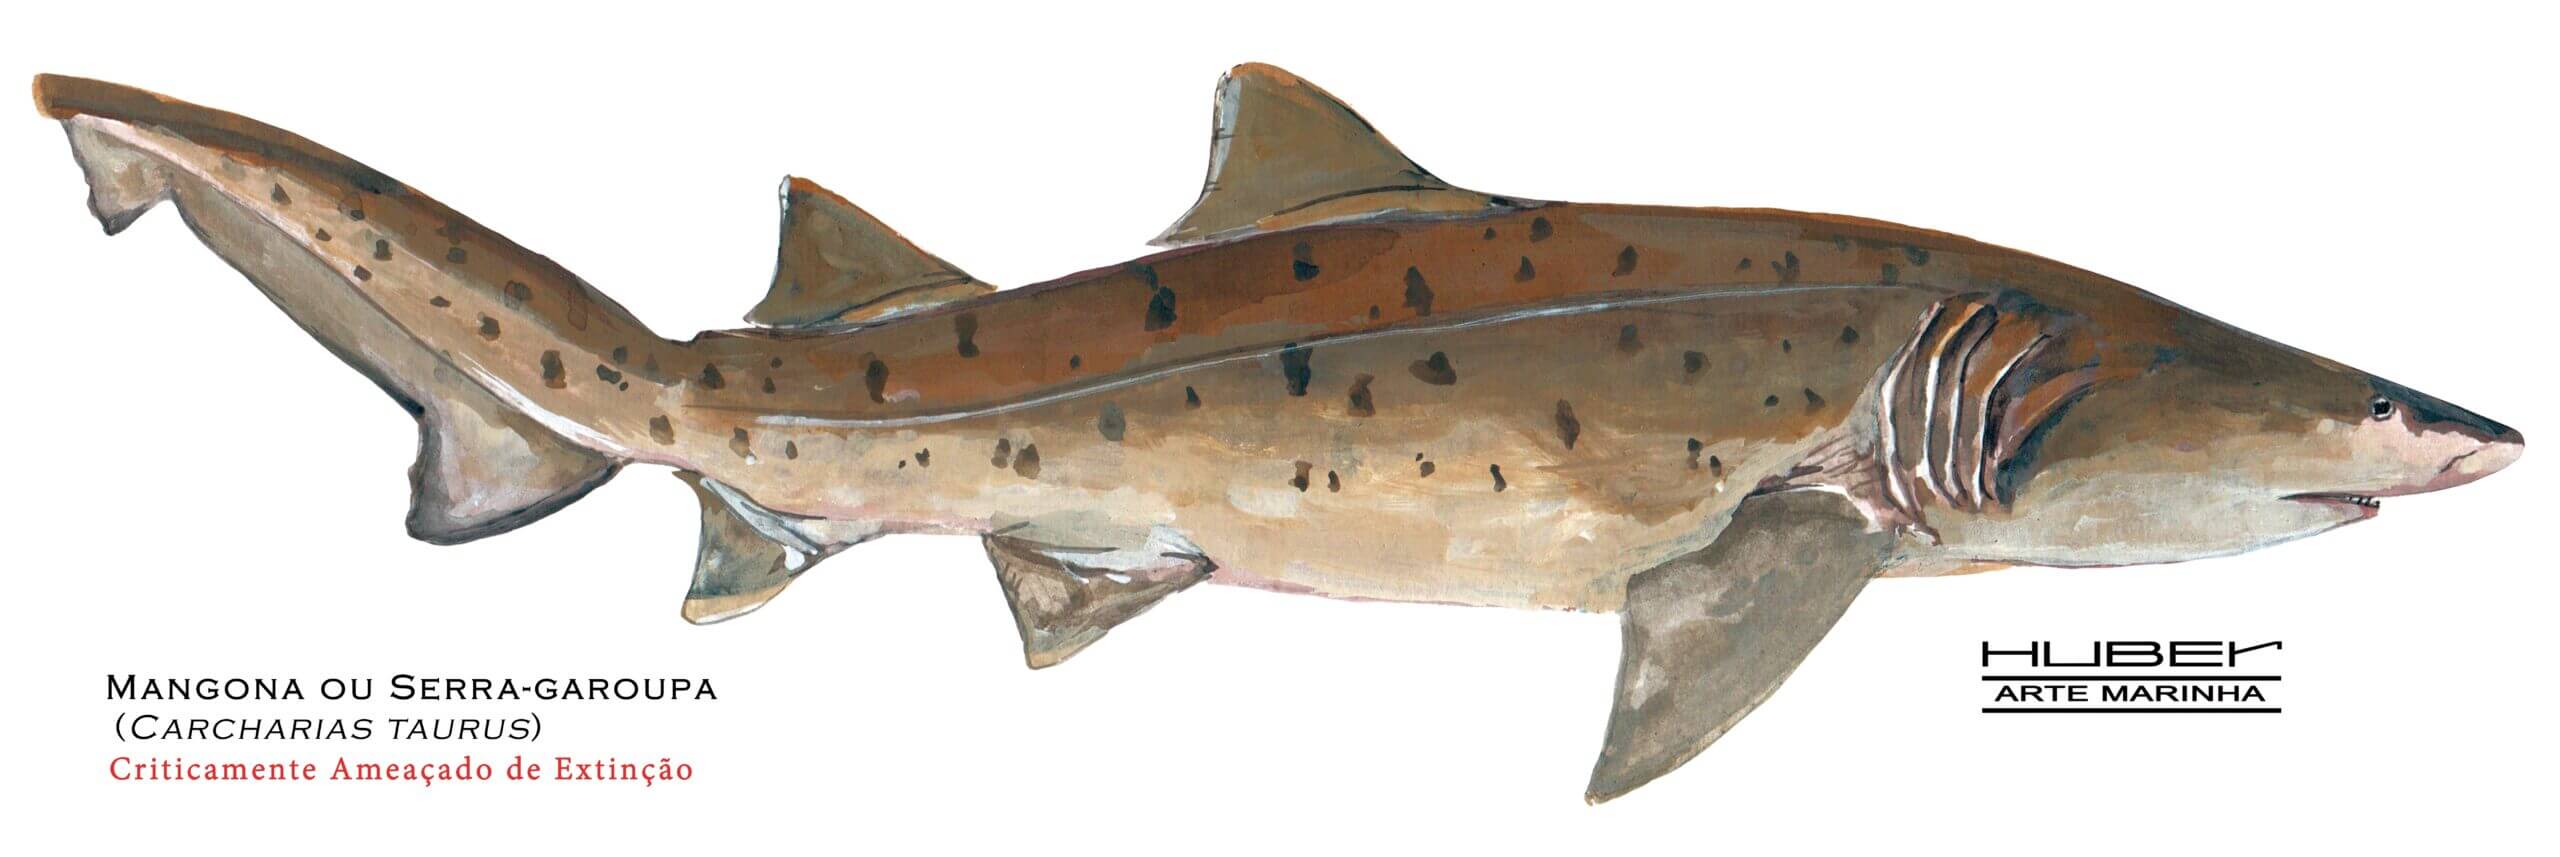 Tubarão Mangona, Huber Arte marinha